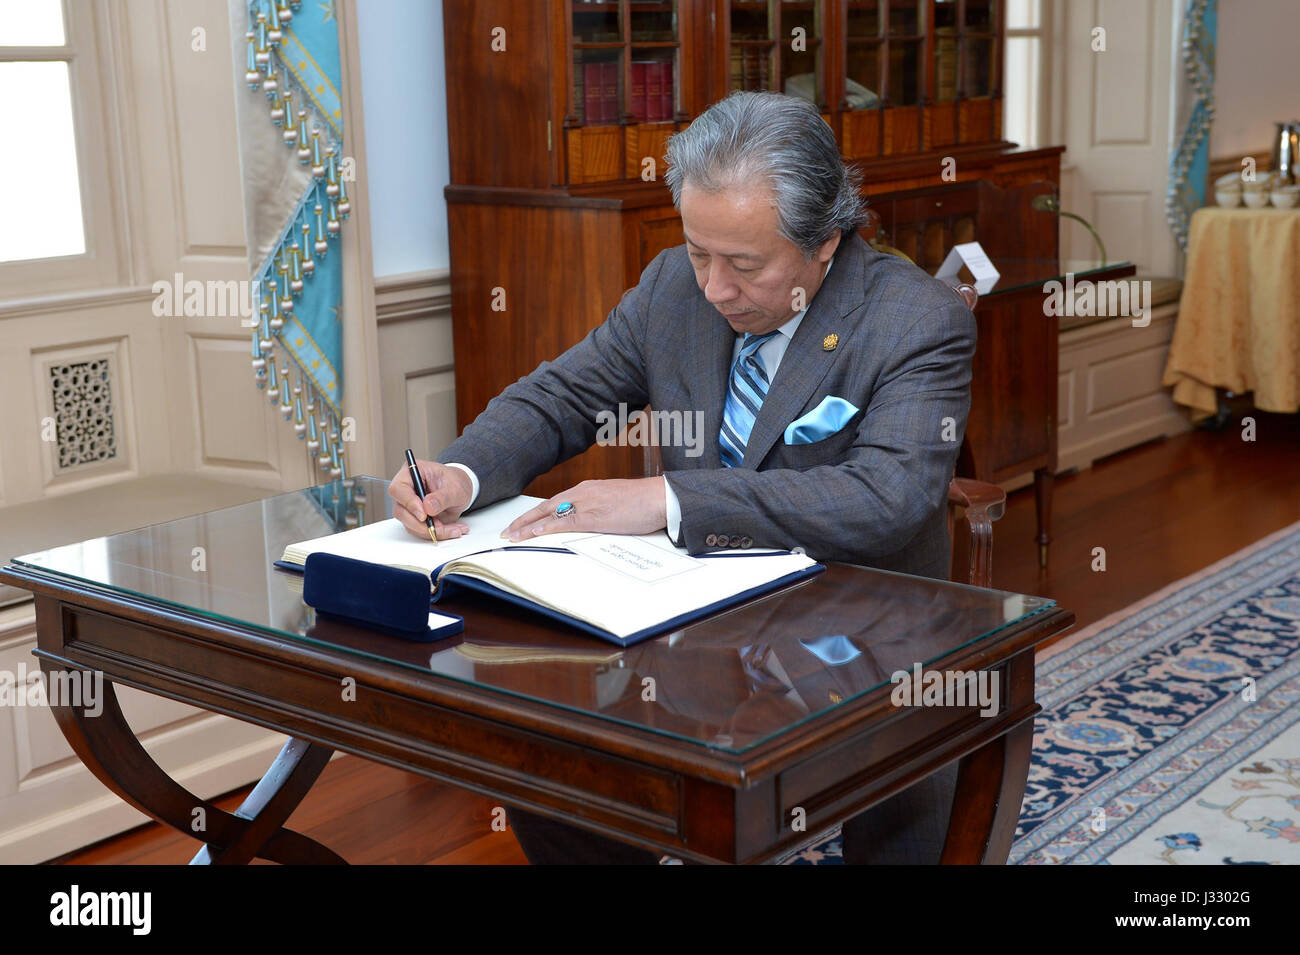 El Ministro de Relaciones Exteriores de Malasia Dato' Sri Anifah Aman firma el libro de visitas durante su visita al Departamento de Estado, 21 de marzo de 2017. Foto de stock